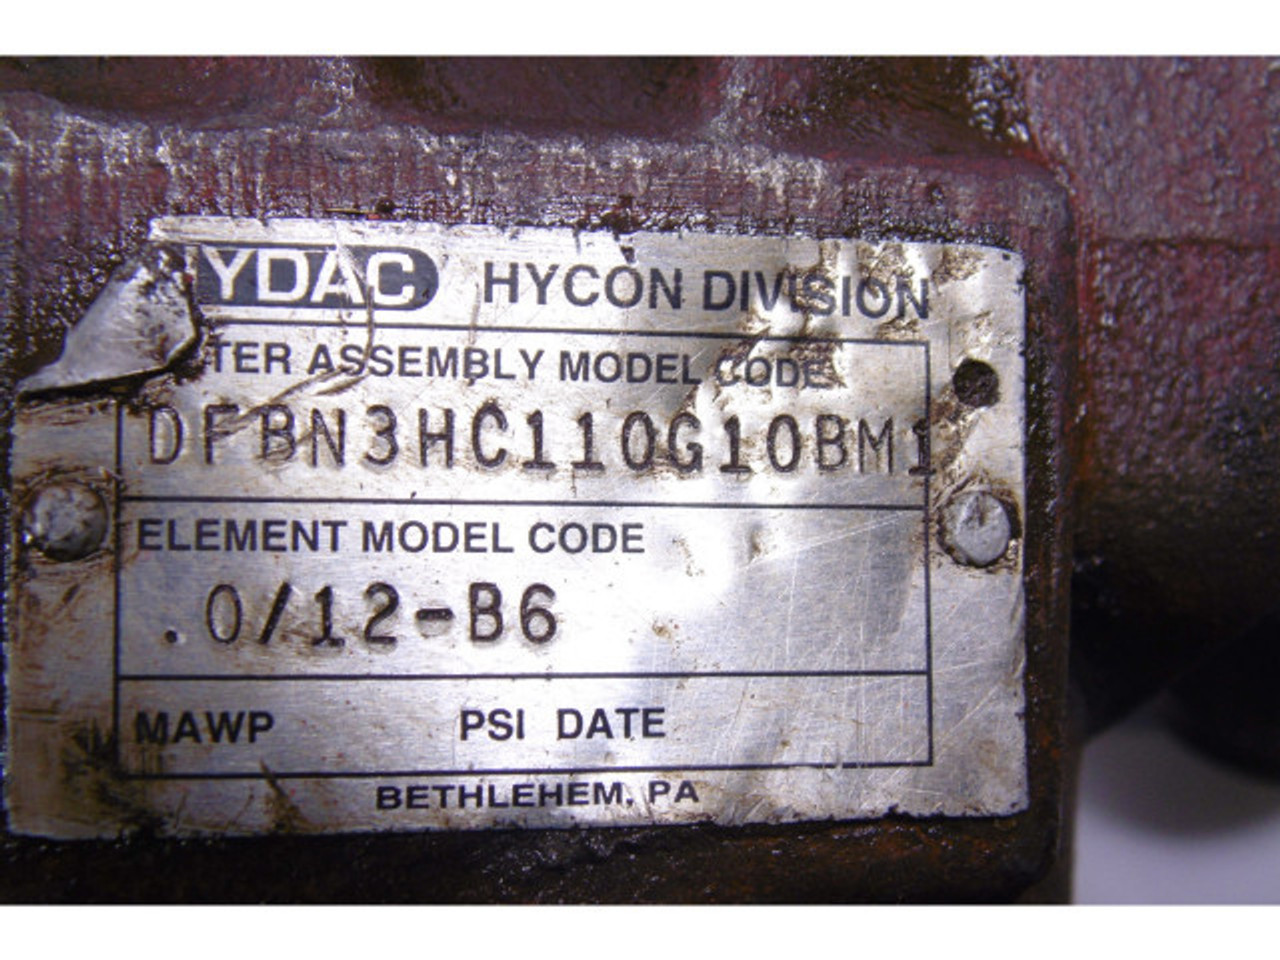 Hydac DFBN3HC110G10BM1 Hydraulic Pressure Filter USED